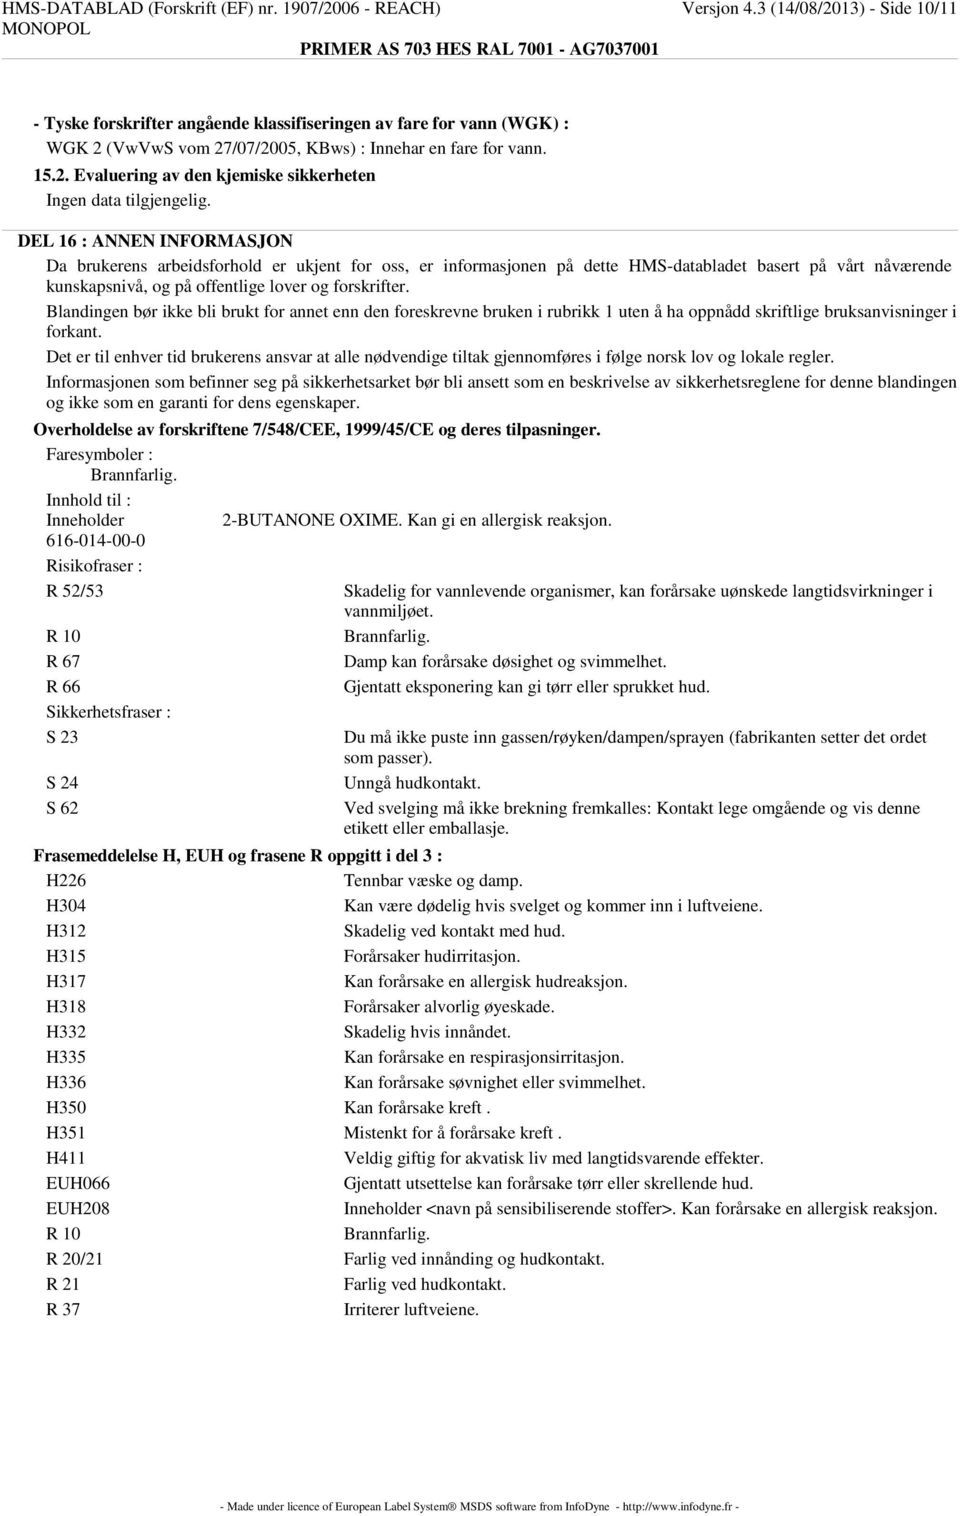 13) - Side 10/11 - Tyske forskrifter angående klassifiseringen av fare for vann (WGK) : WGK 2 